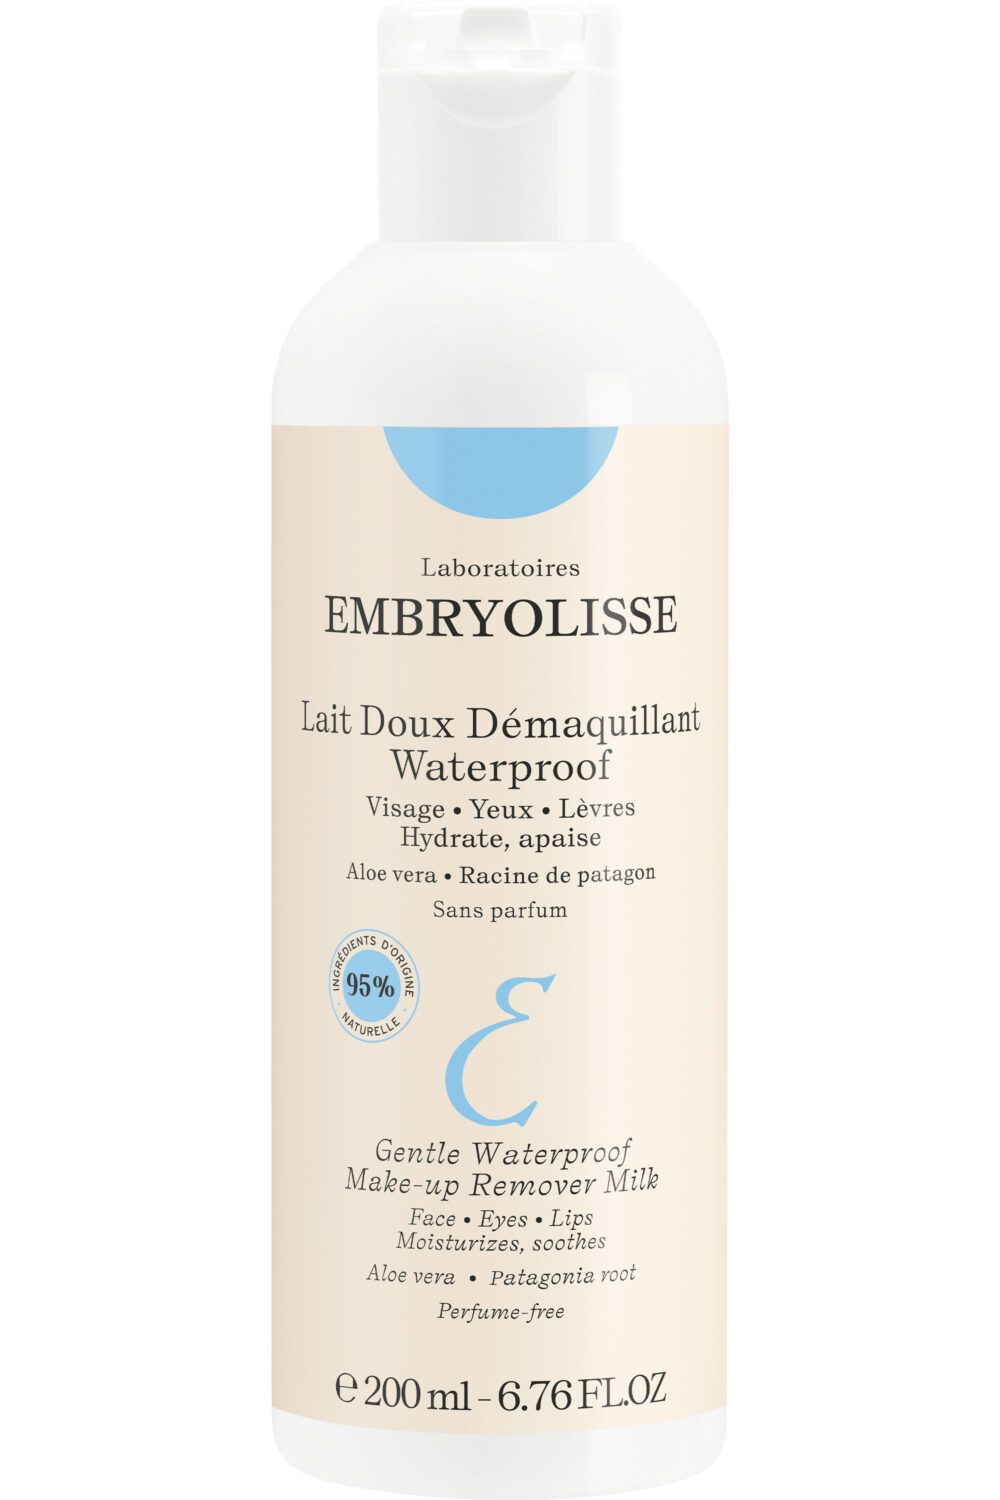 Embryolisse - Lait doux démaquillant Waterproof